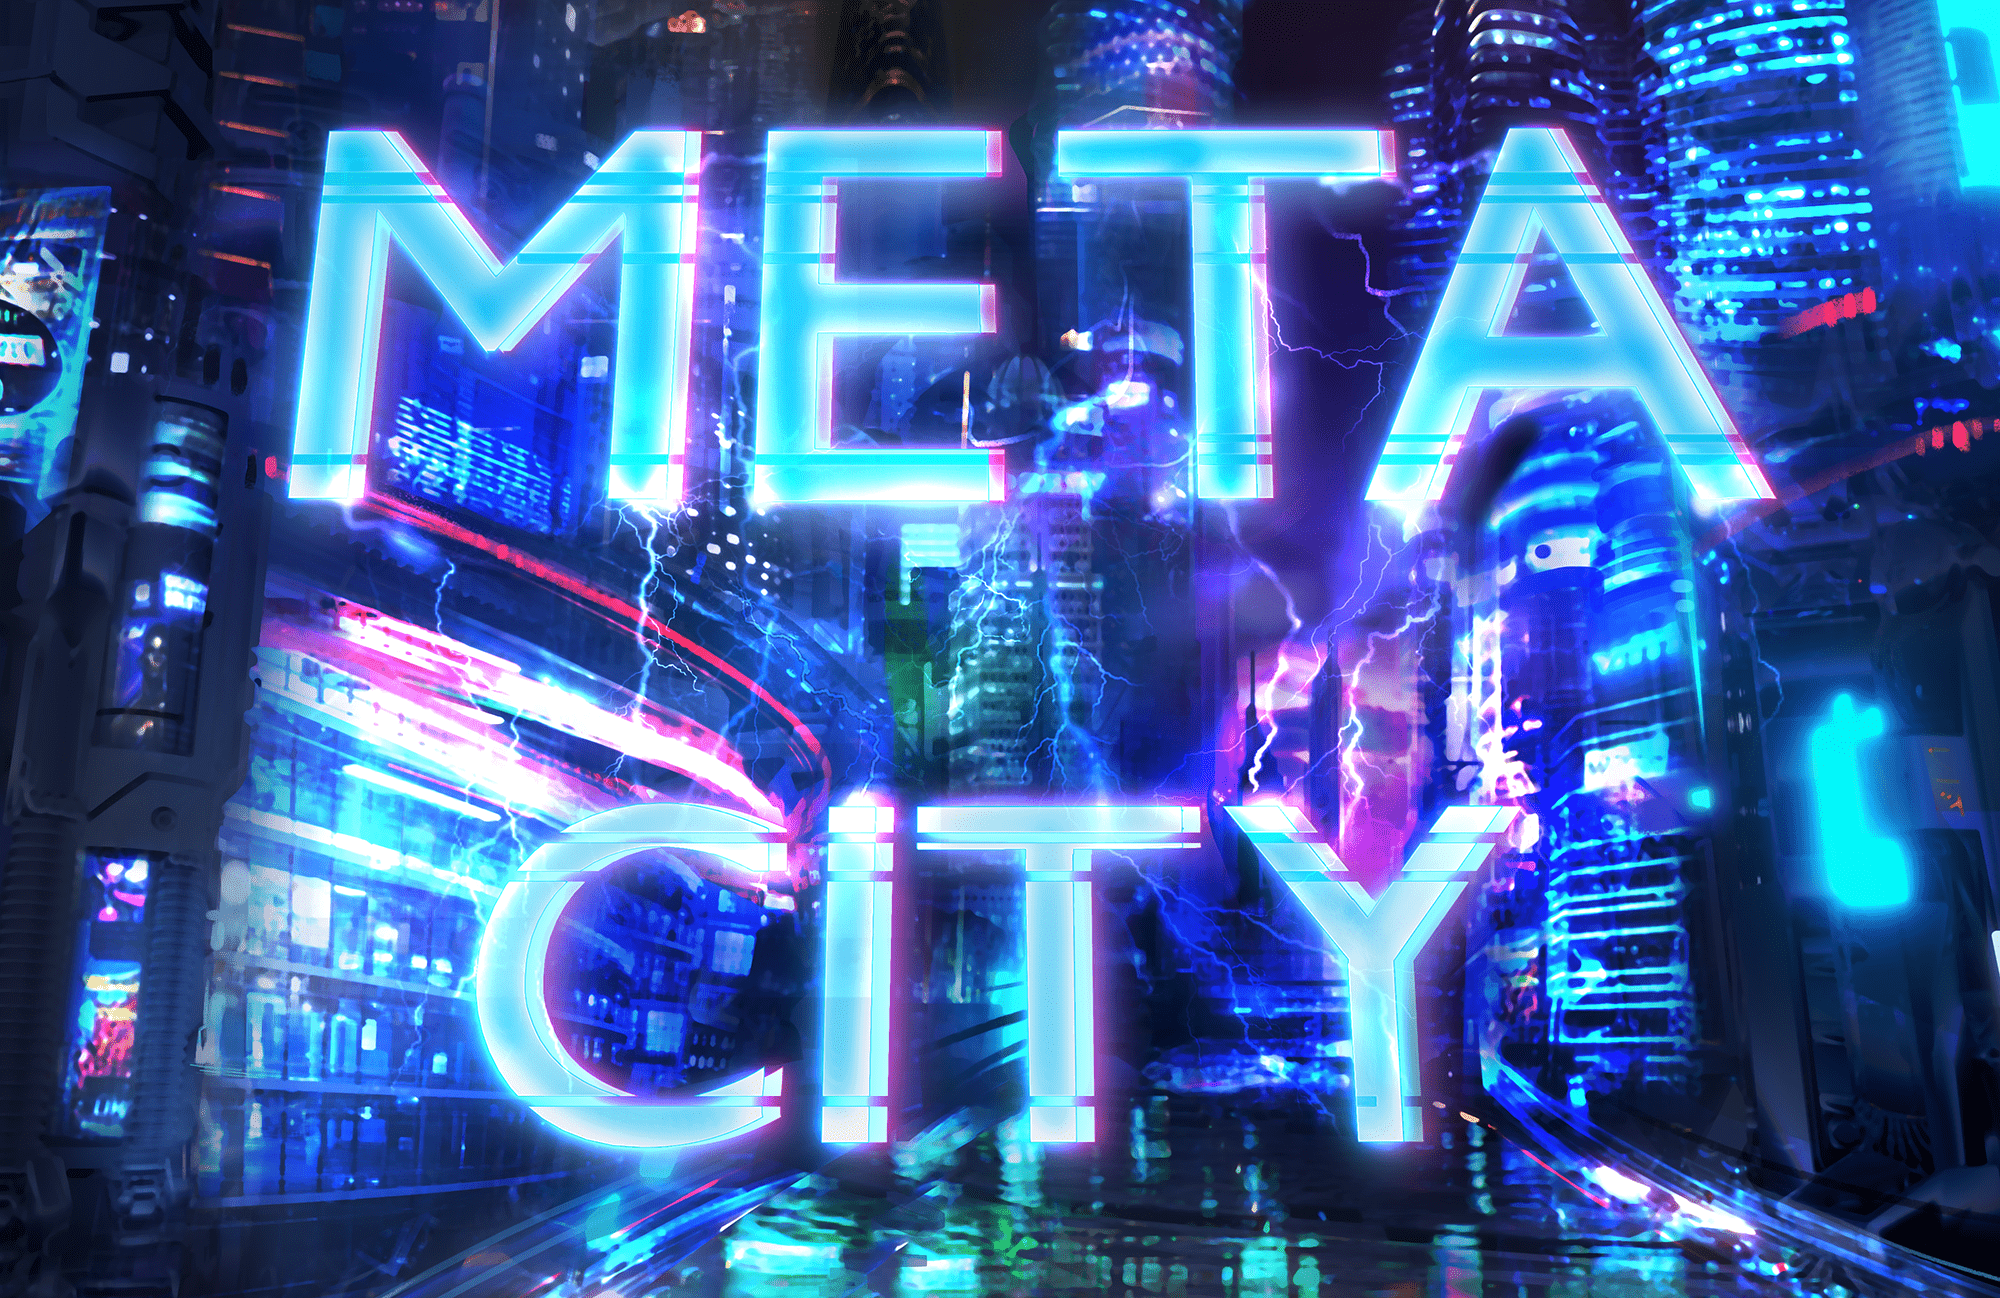 Meta City Welcomes You Home!